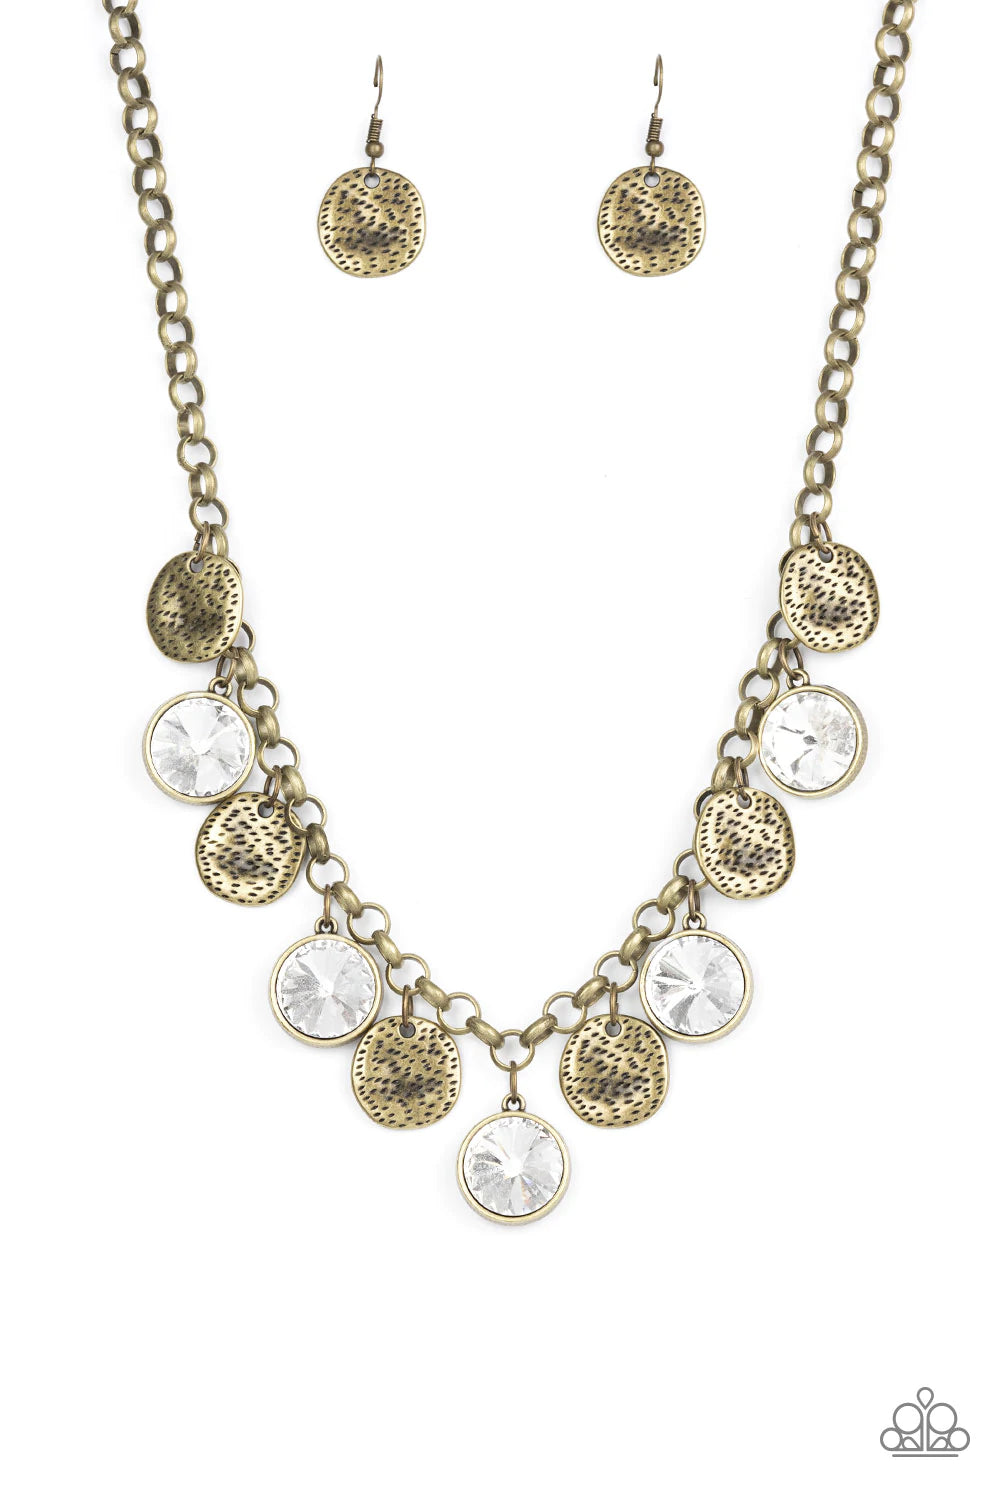 Spot On Sparkle - Brass Necklace